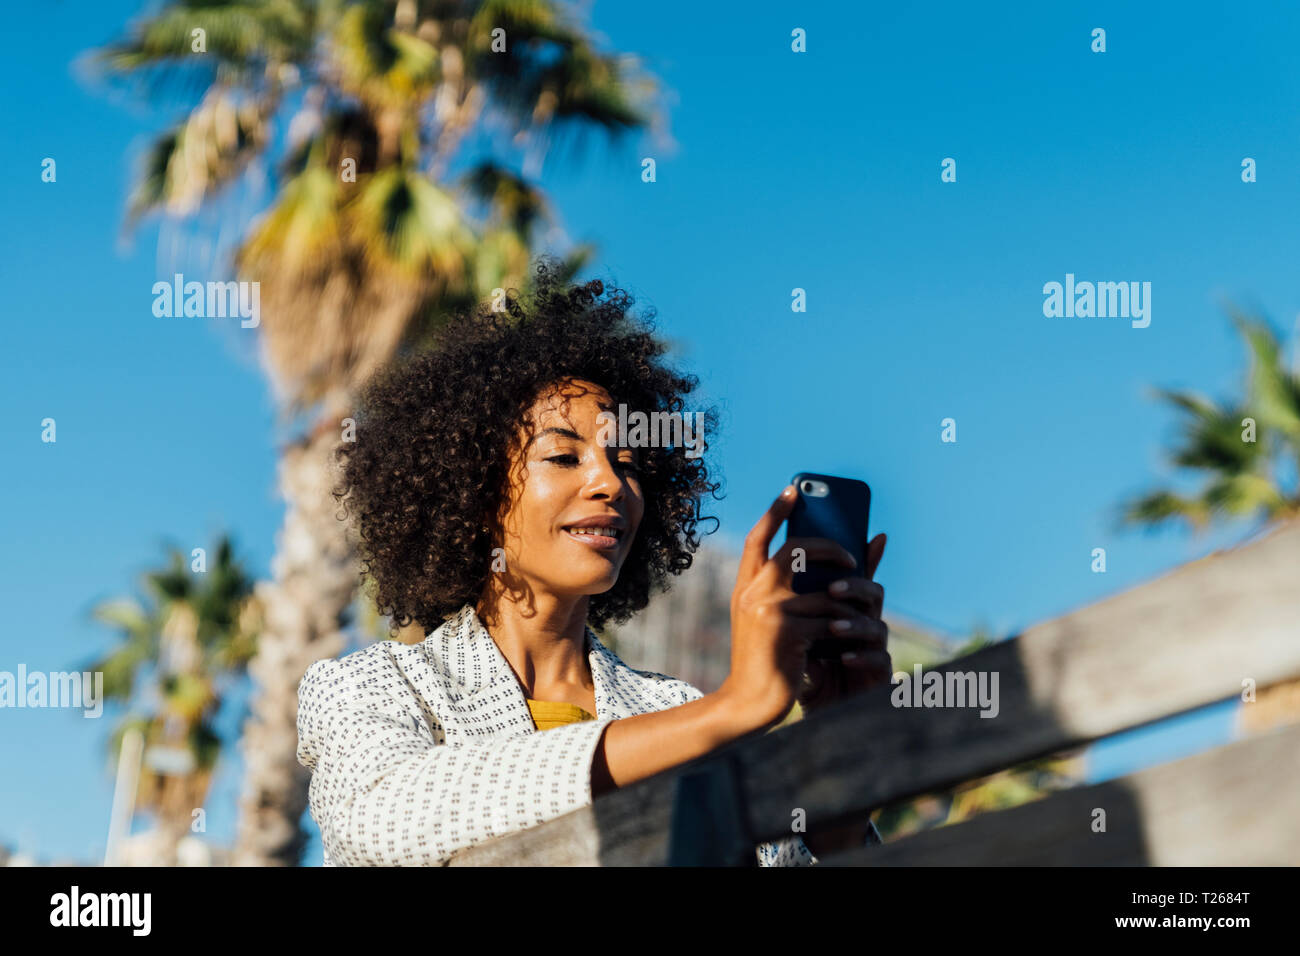 Schöne Frau sitzen auf einer Bank in der Stadt, takig Bilder mit Ihrem Smartphone Stockfoto